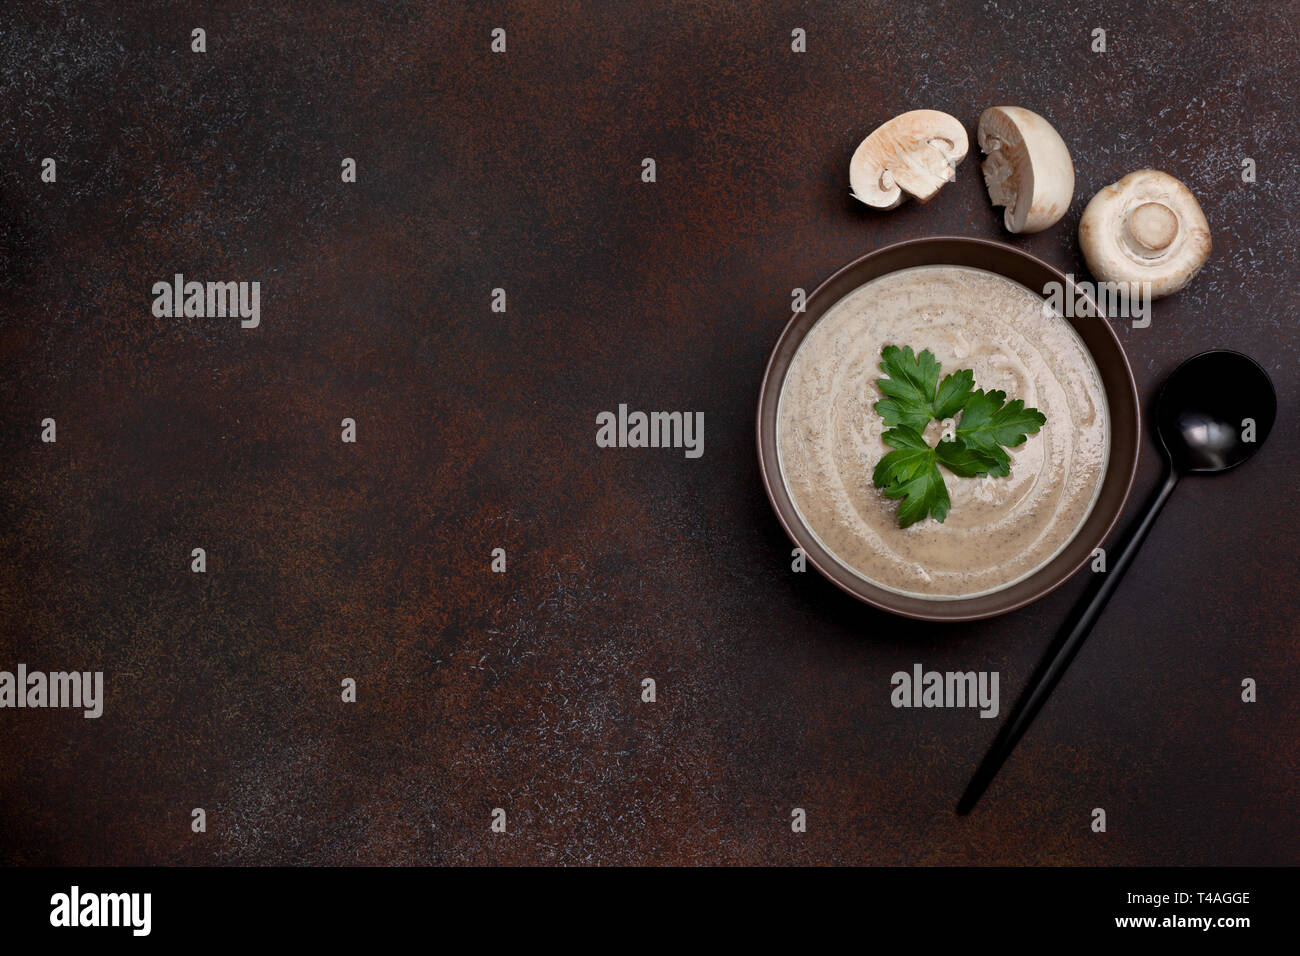 Soupe aux champignons dans un bol, champignons sur un fond brun. Vue de dessus. copy space Banque D'Images